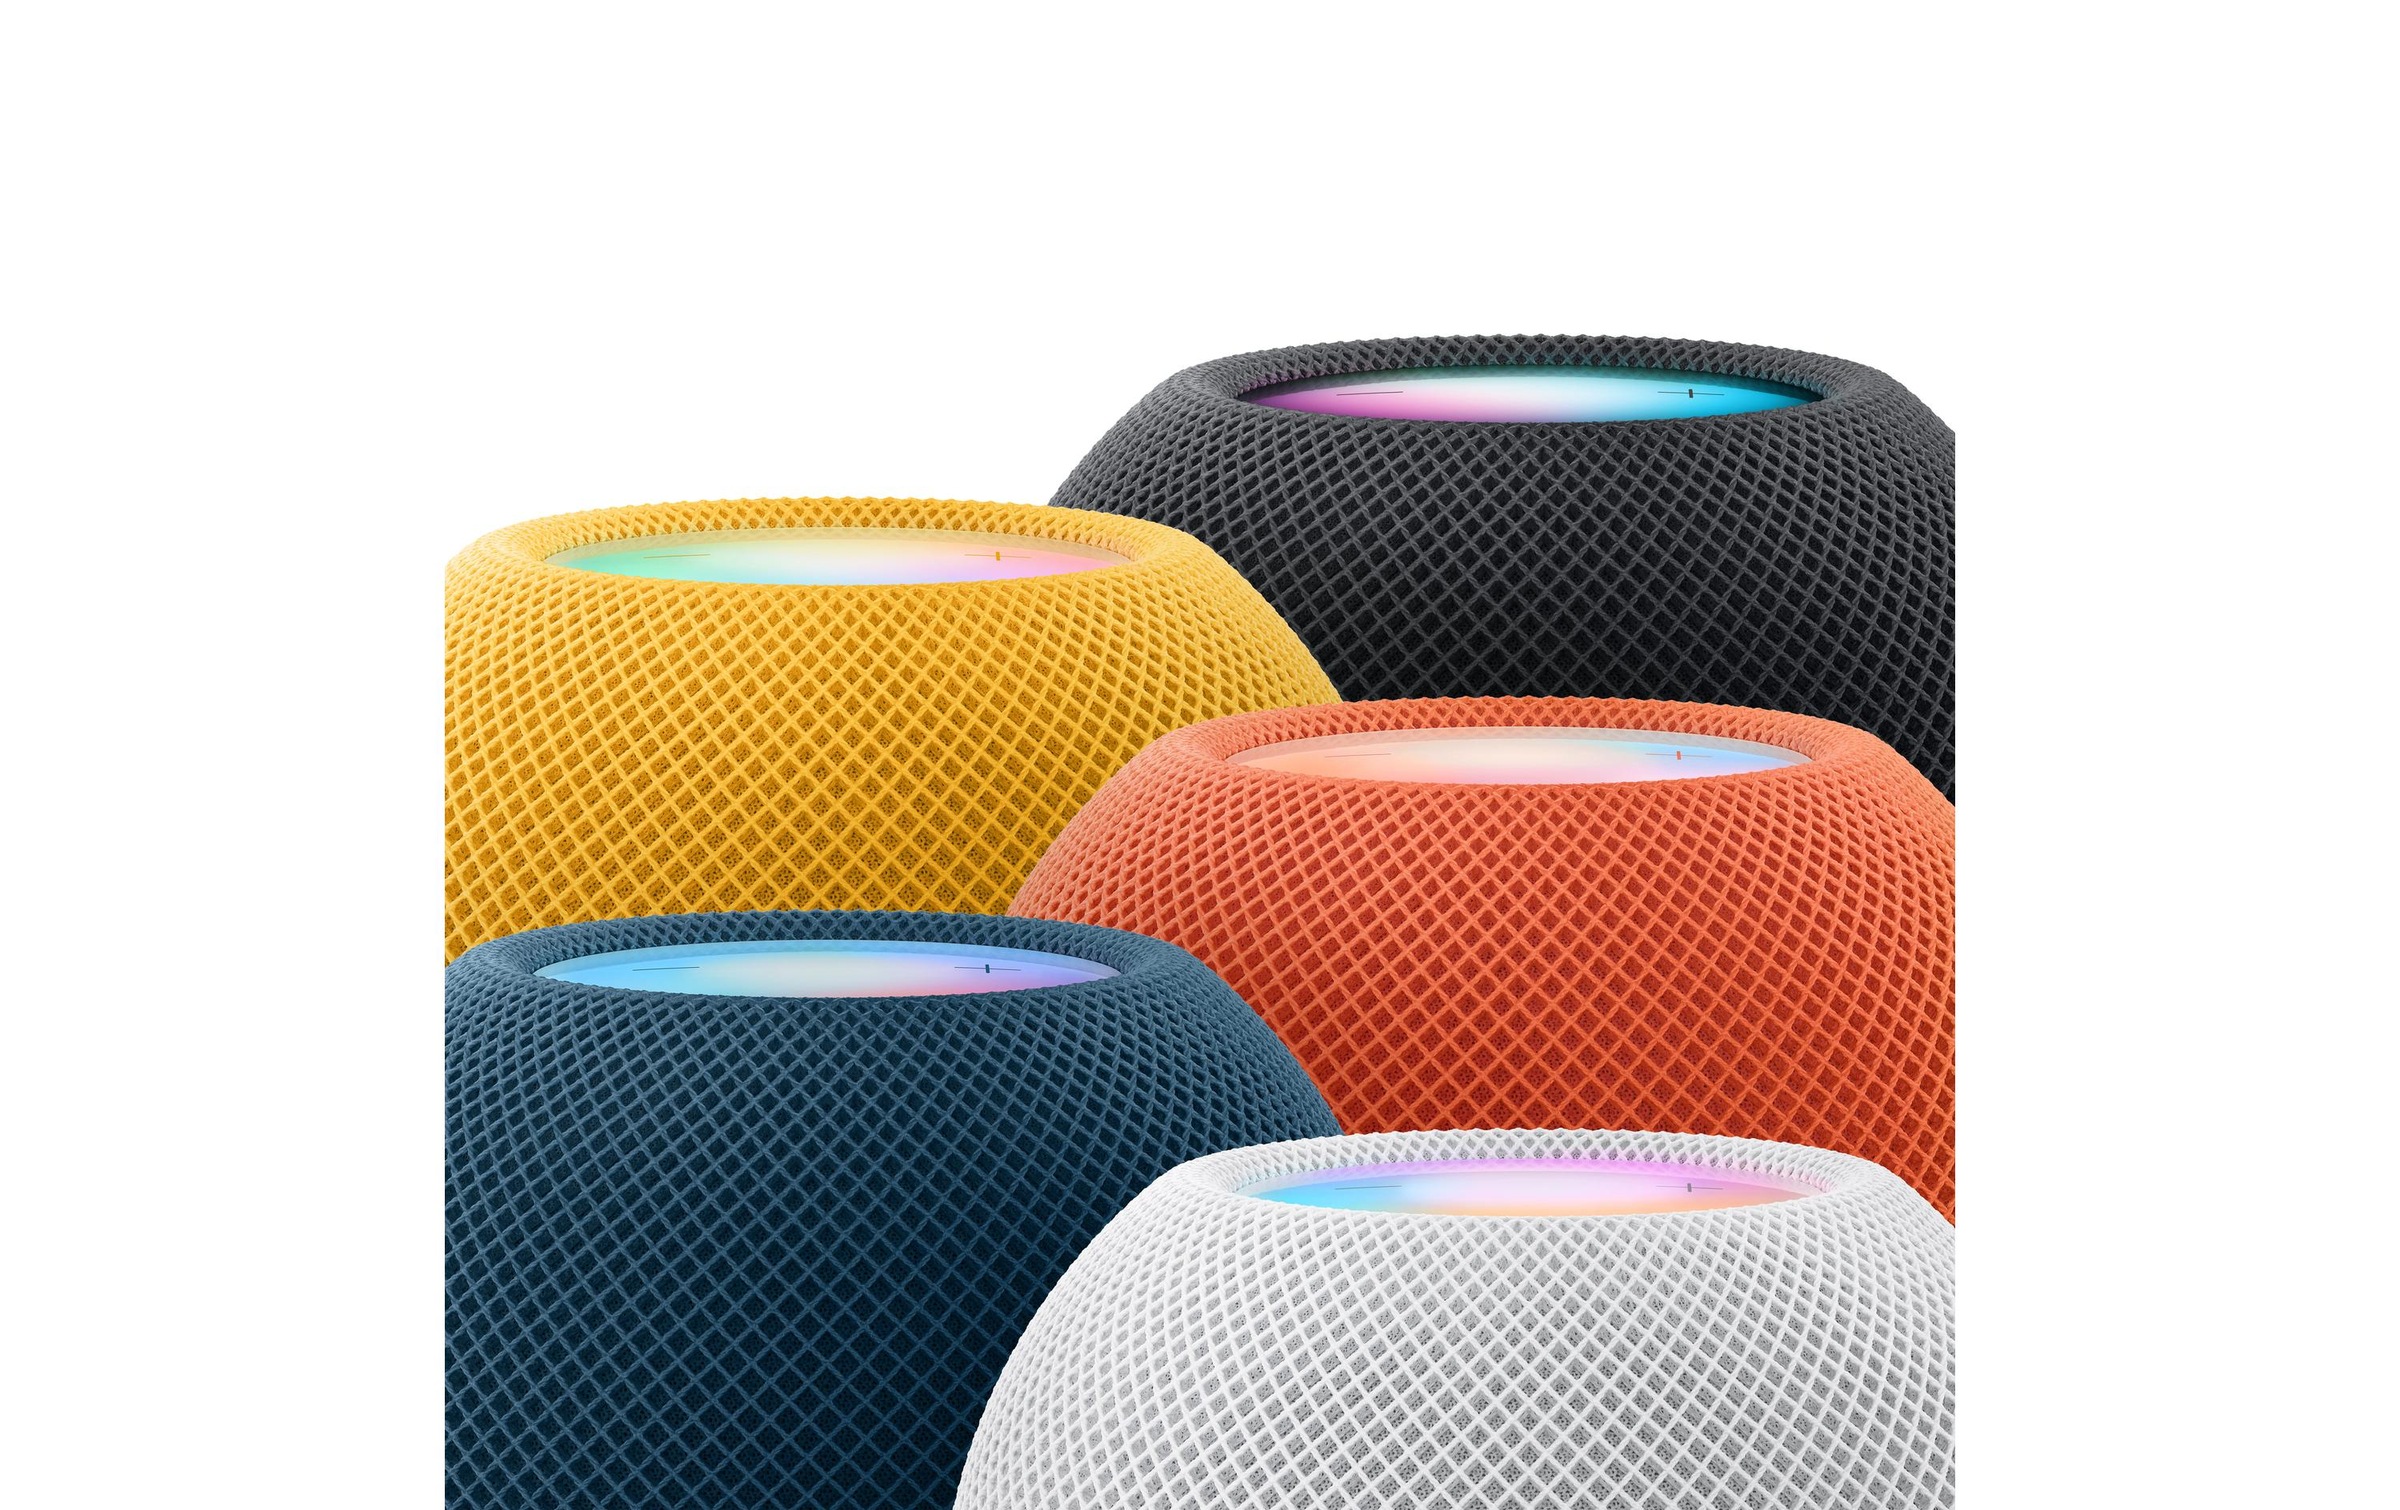 Apple Smart Speaker »HomePod mini« Gelb